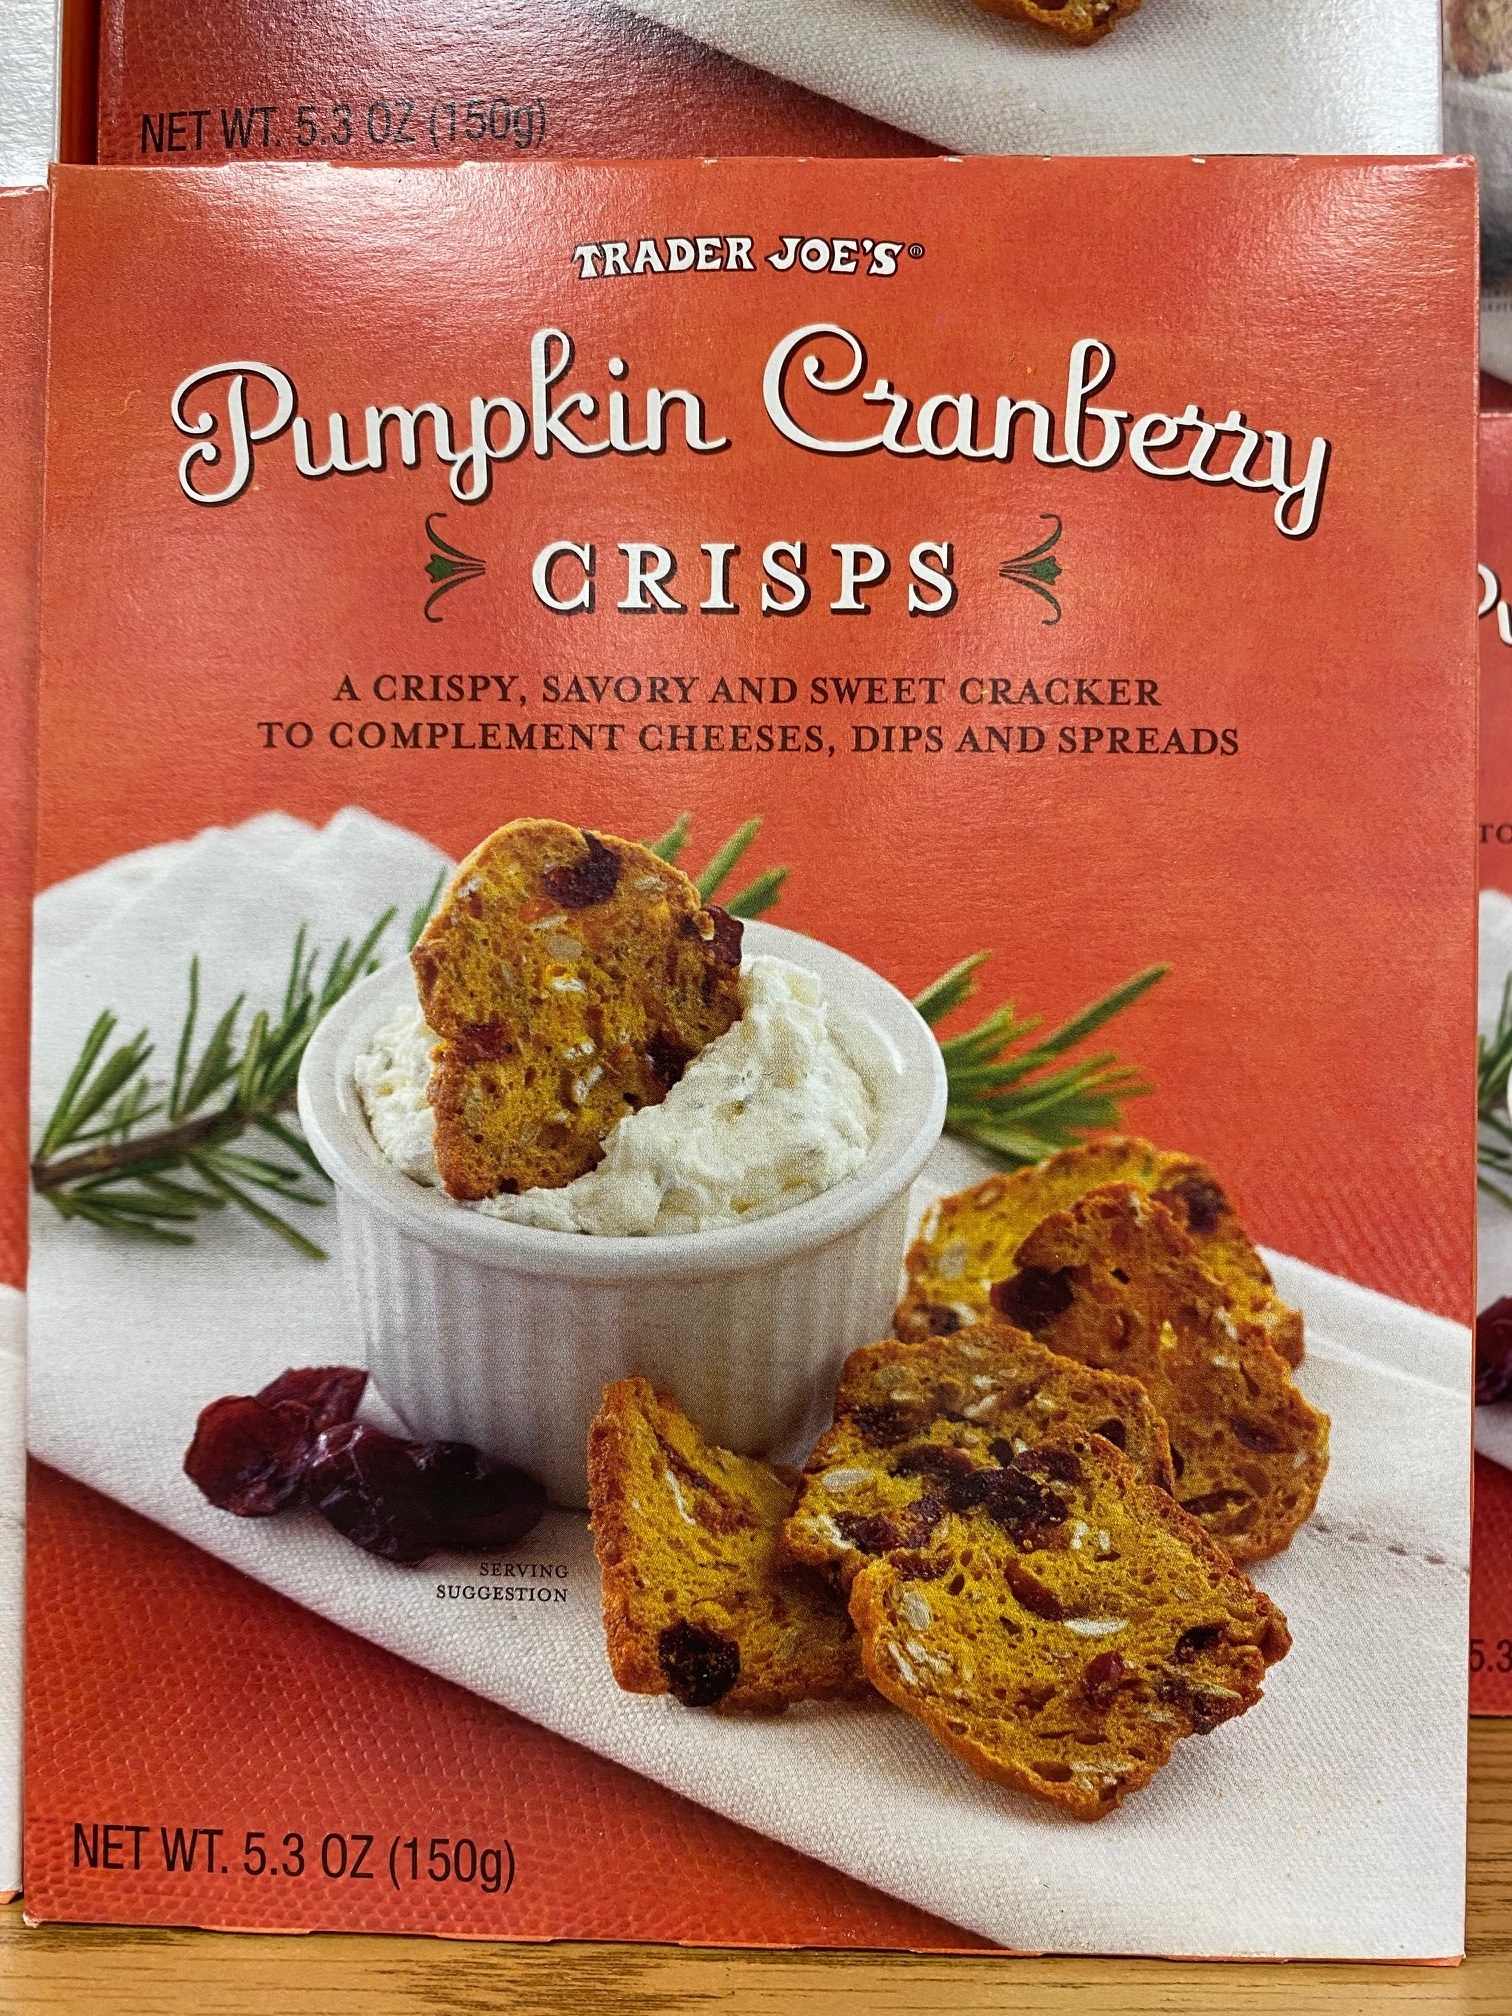 Pumpkin Cranberry Crisps